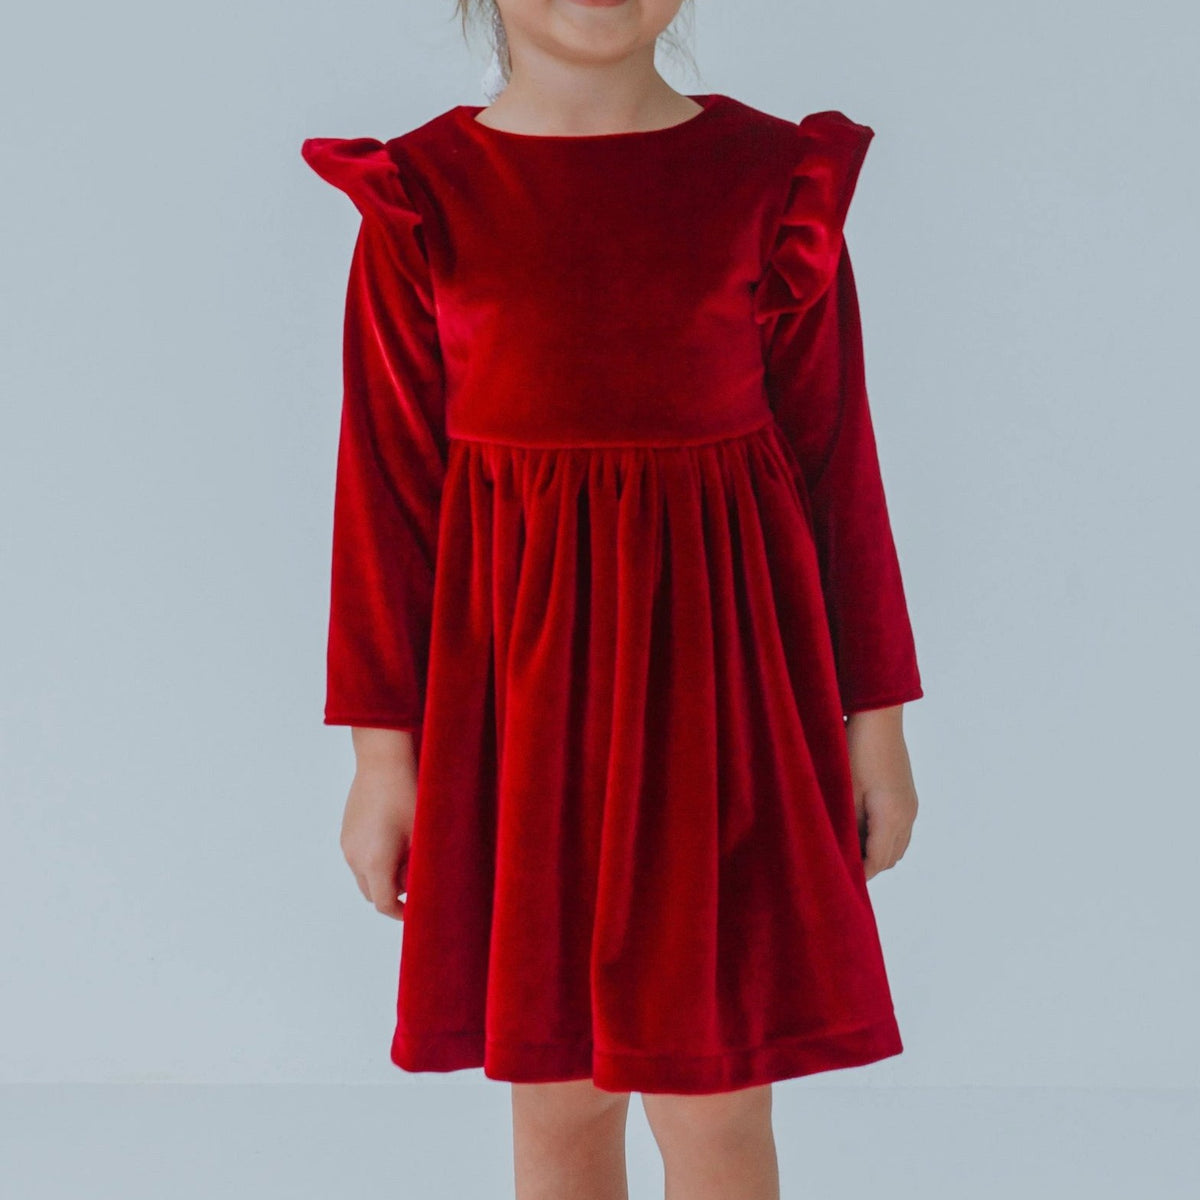 girls red velvet christmas dress